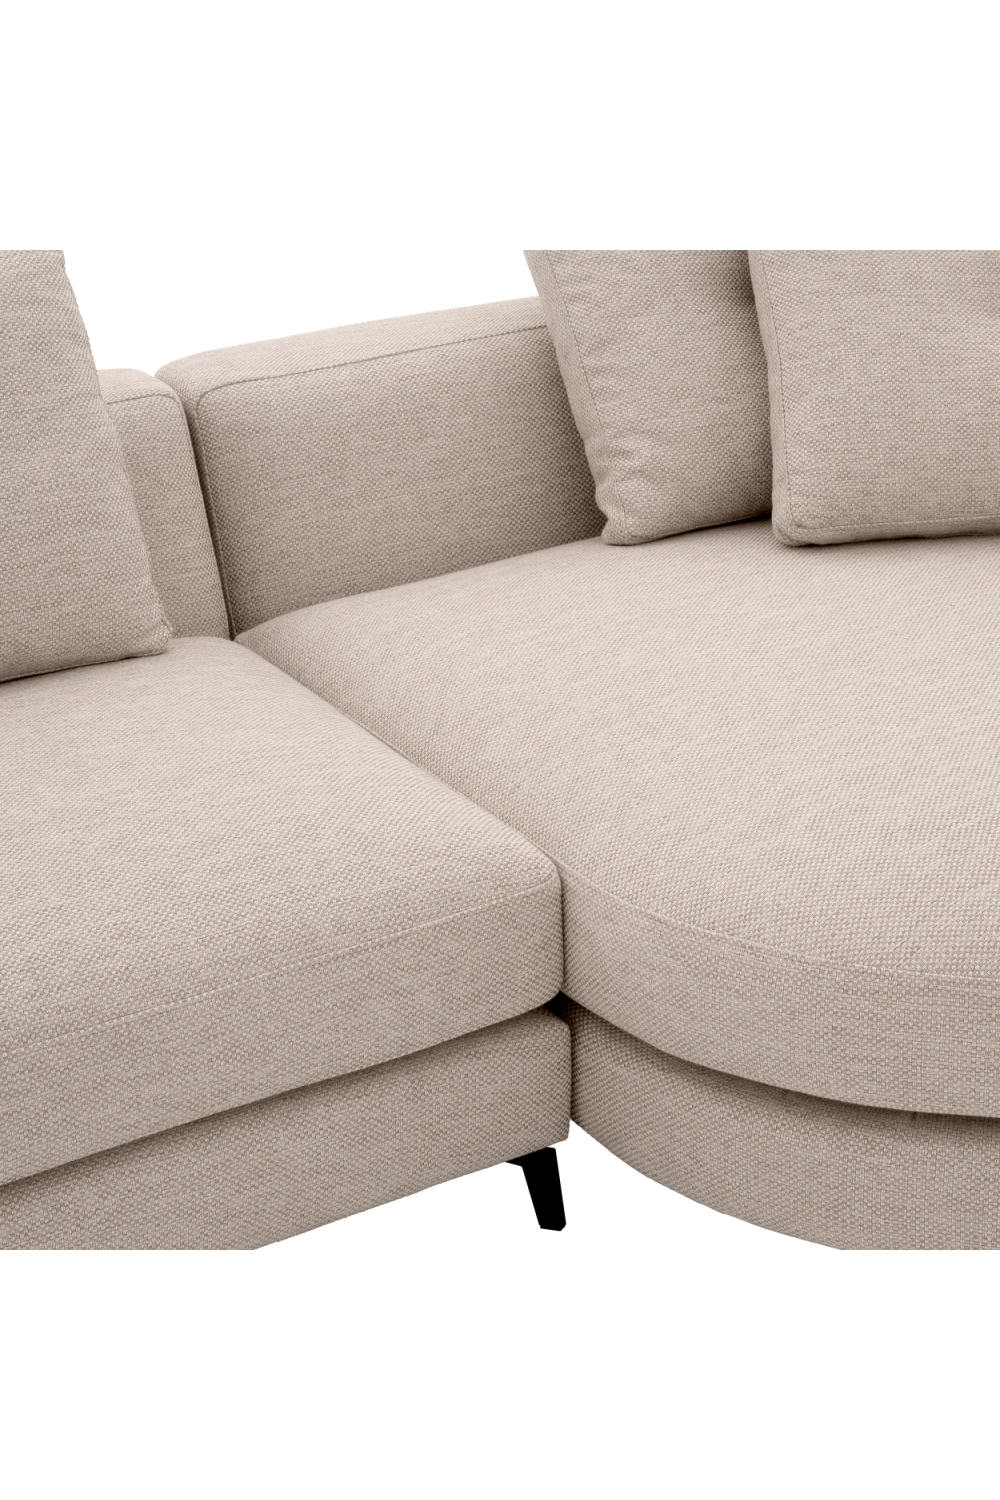 Beige Sectional Sofa S | Eichholtz Moderno | Oroa.com